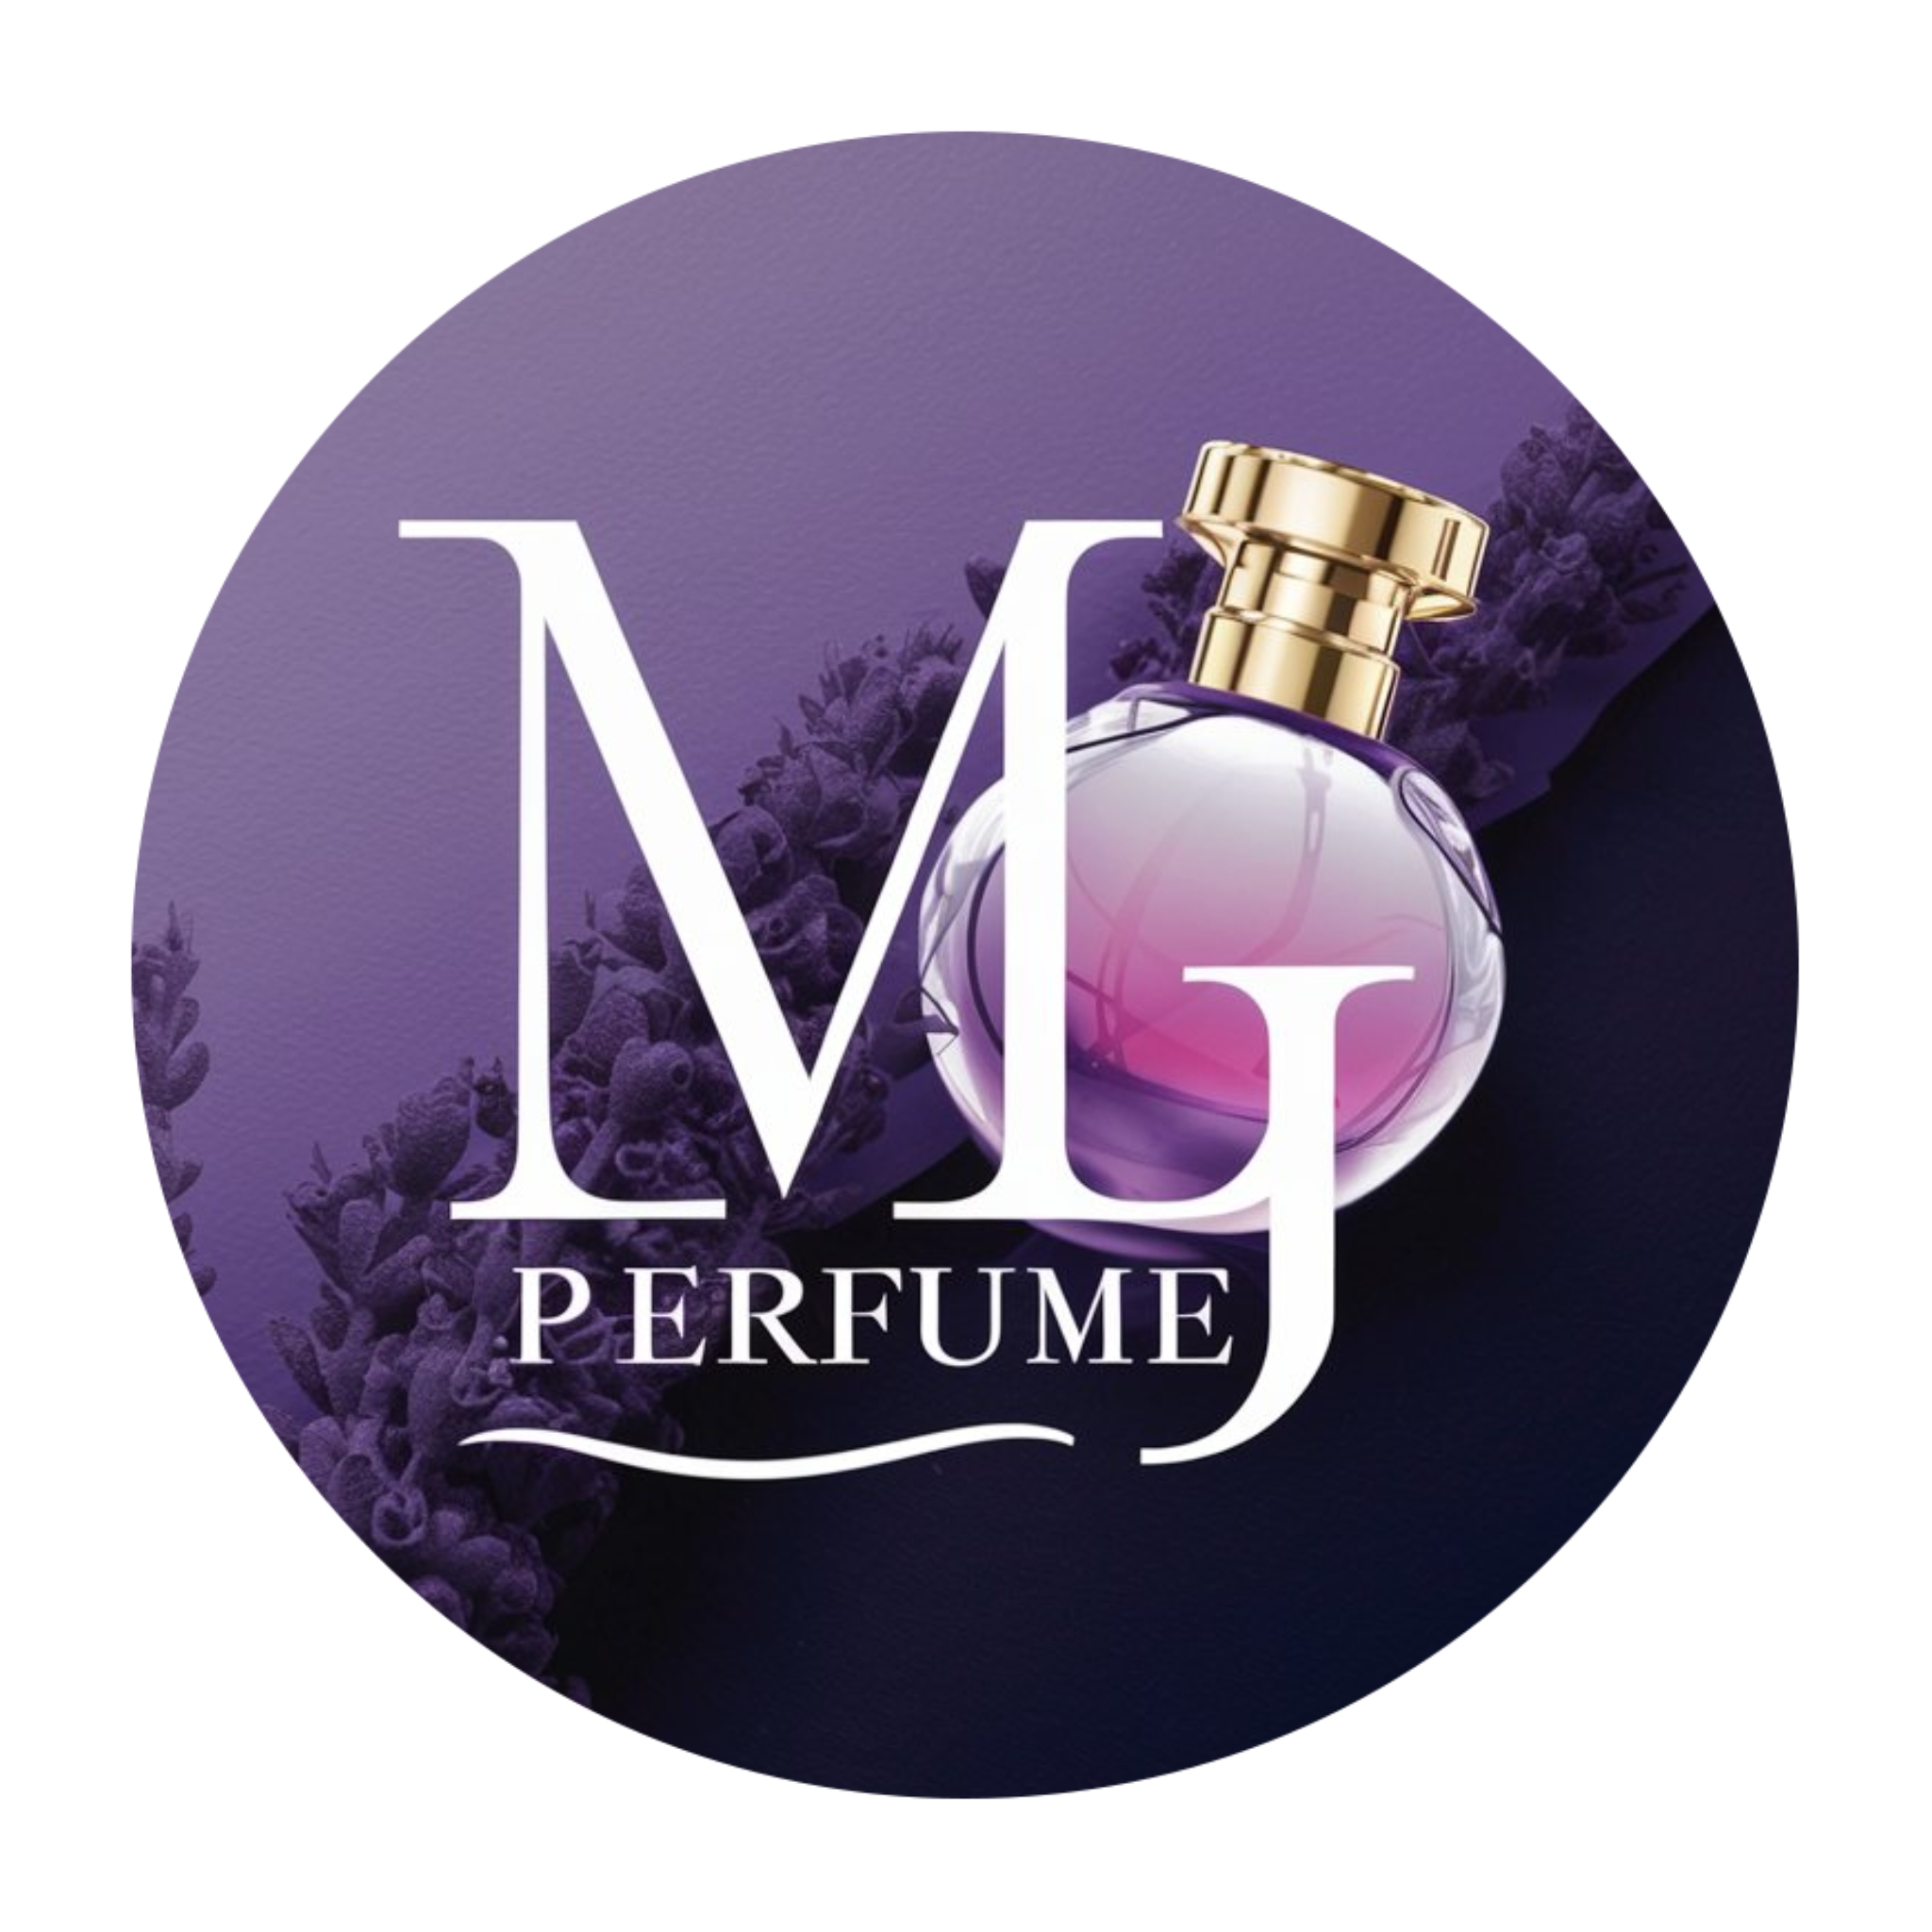 MG perfume